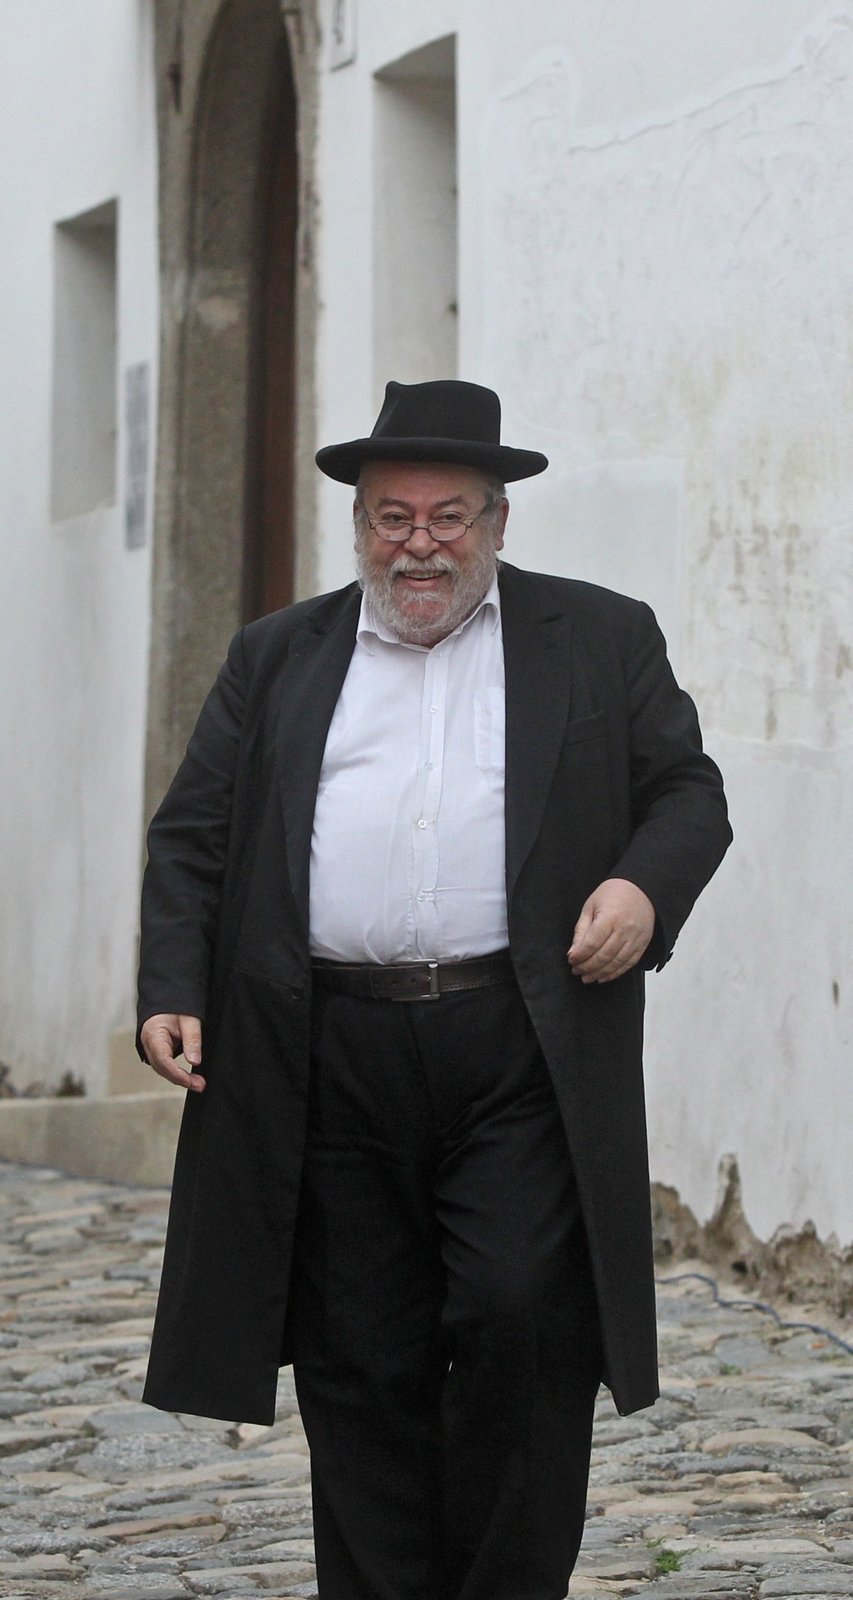 Karol Sidon rezignoval na funkci vrchního pražského rabína, vzal si dovolenou a urovnal si své osobní záležitosti.